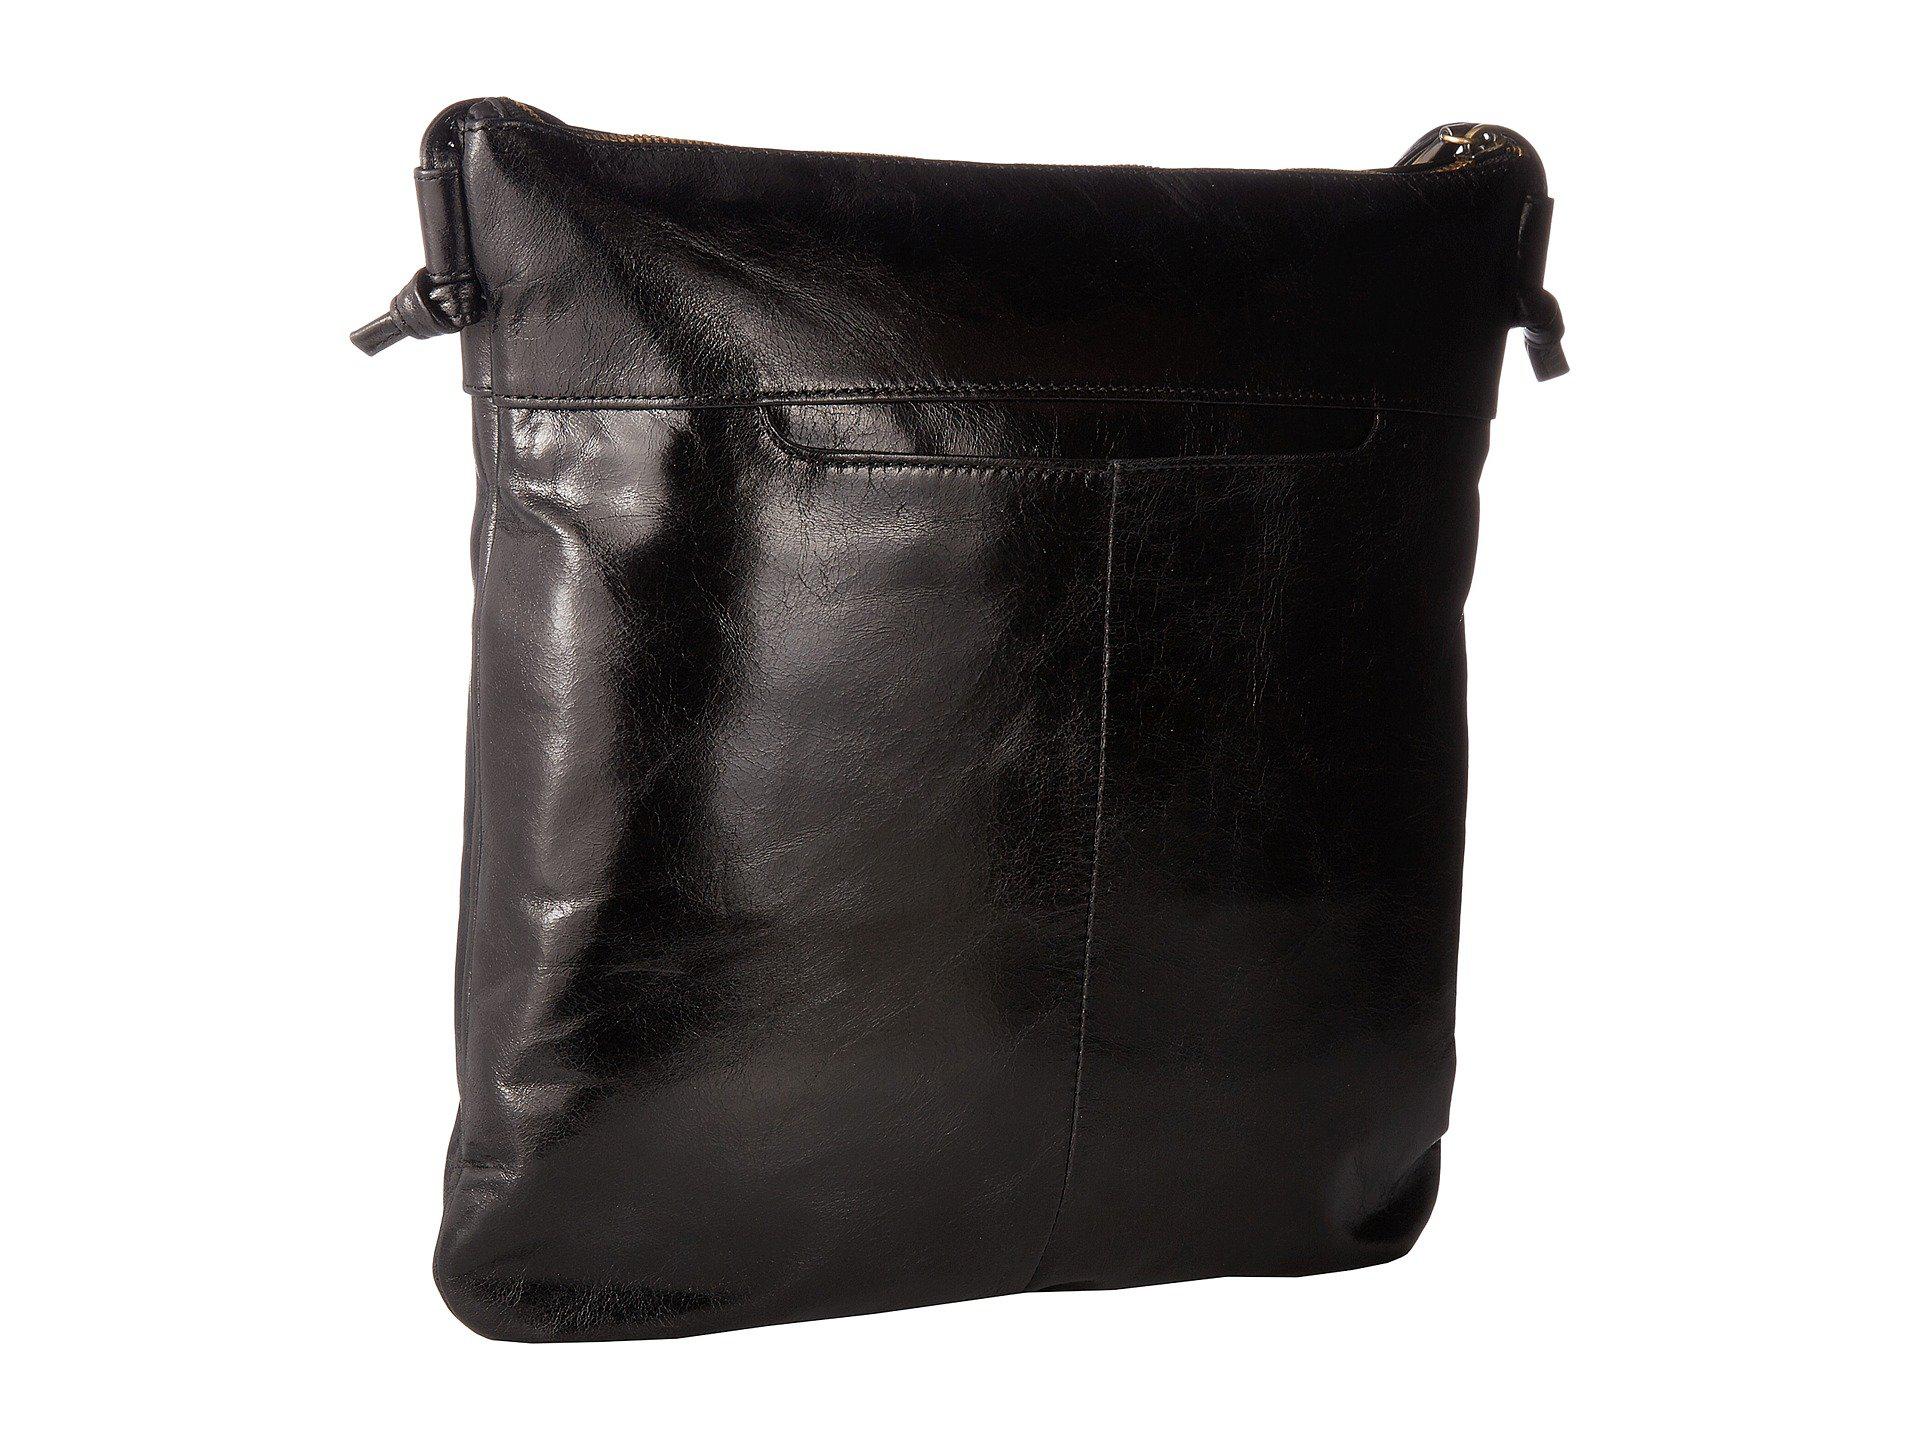 Hobo Leather Stark (black) Cross Body Handbags - Lyst